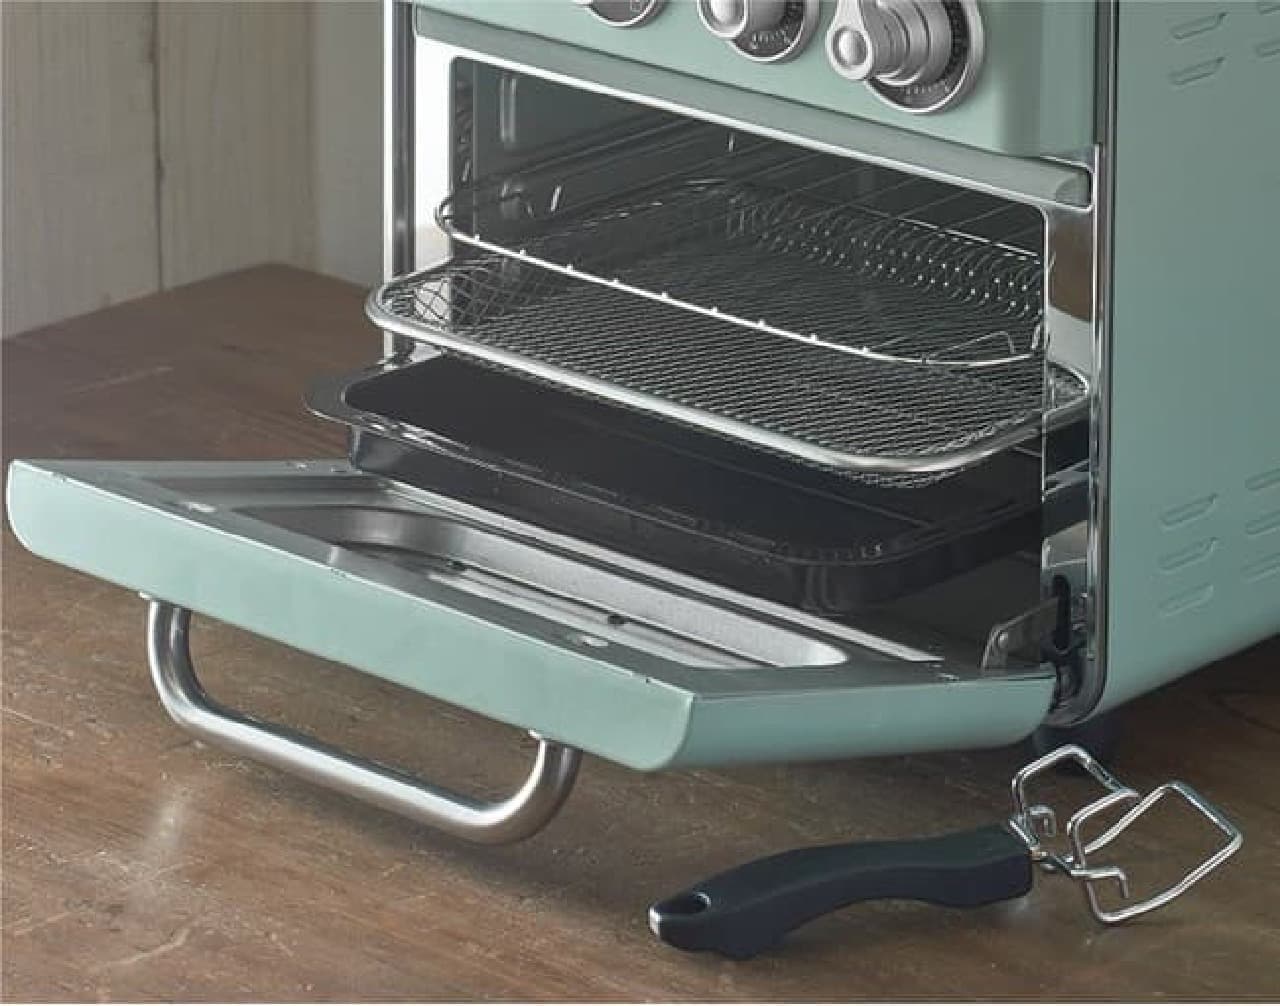 「Toffy ノンフライオーブントースター」登場 -- 油を使わずサクッと！オーブン調理・グリル調理・スローベーク調理・発酵も